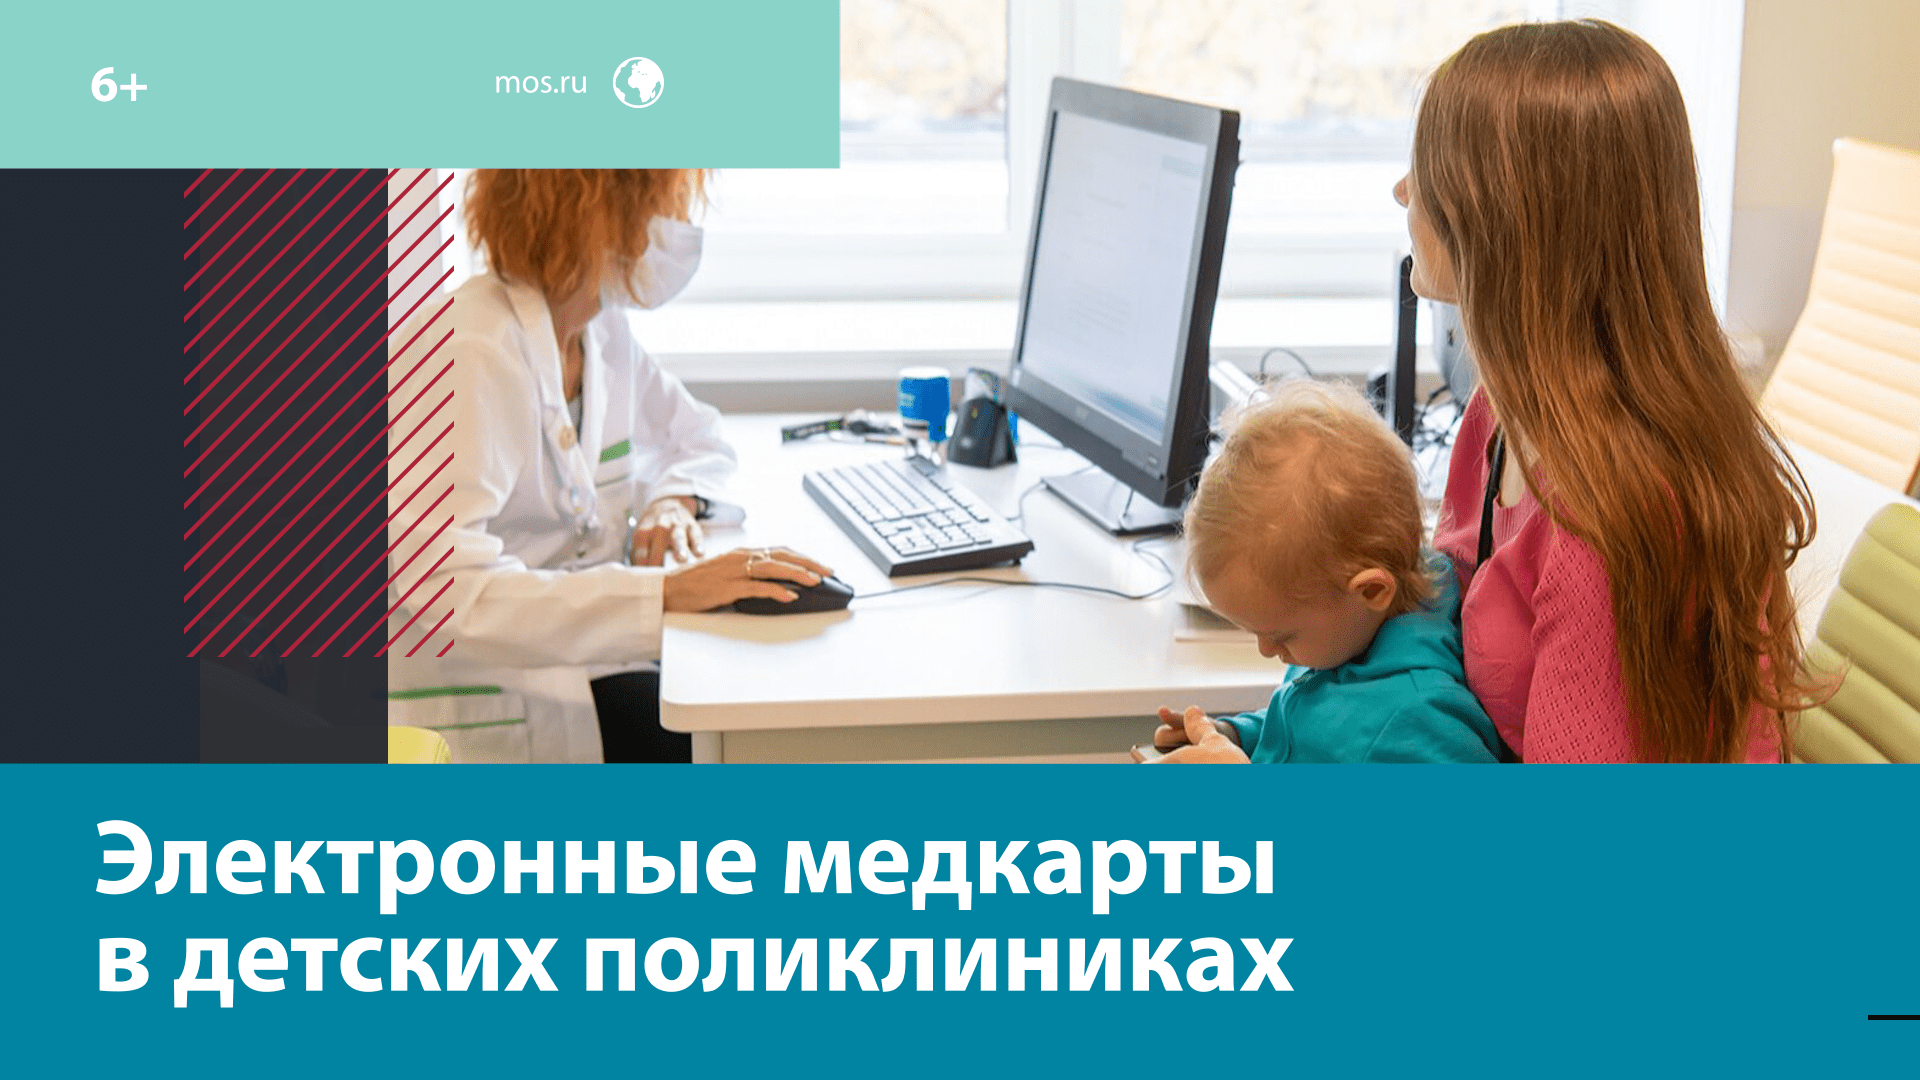 Все детские поликлиники столицы полностью перешли на электронные медкарты – Москва FM